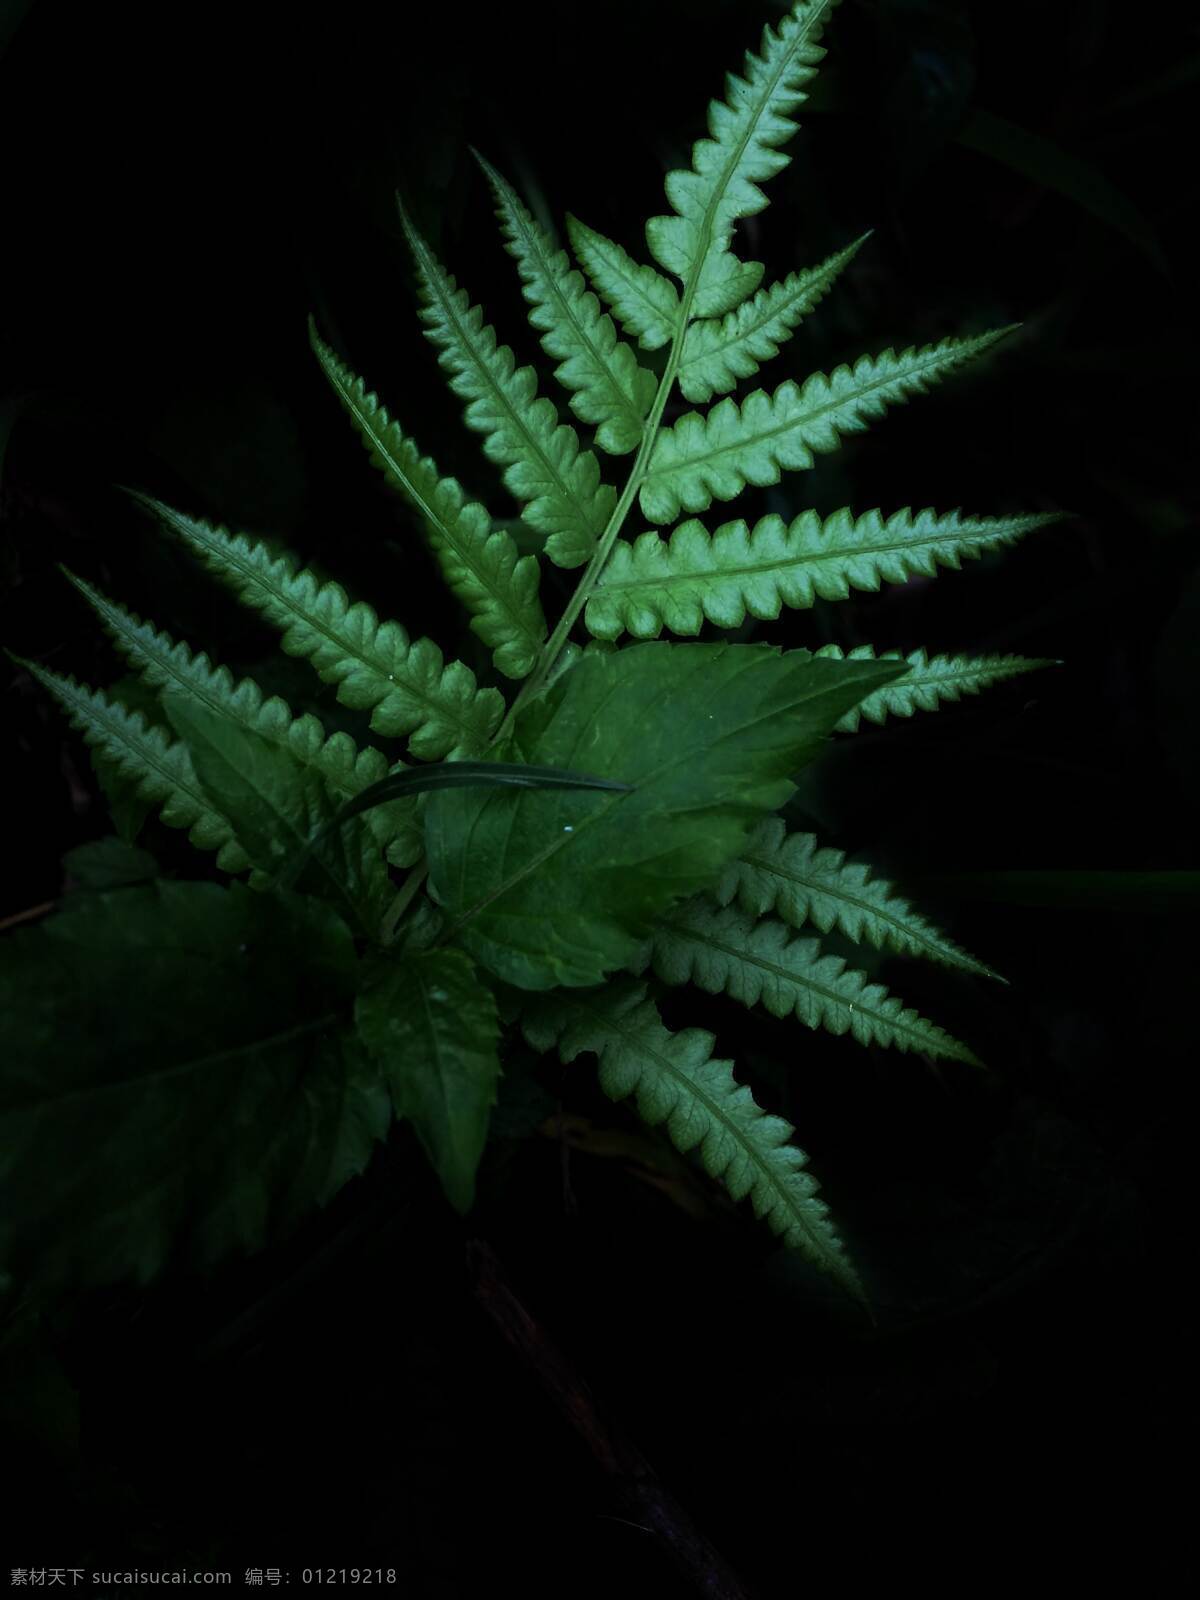 蕨类叶子 春天 绿叶 蕨类 清新 拍摄 摄影类 生物世界 树木树叶